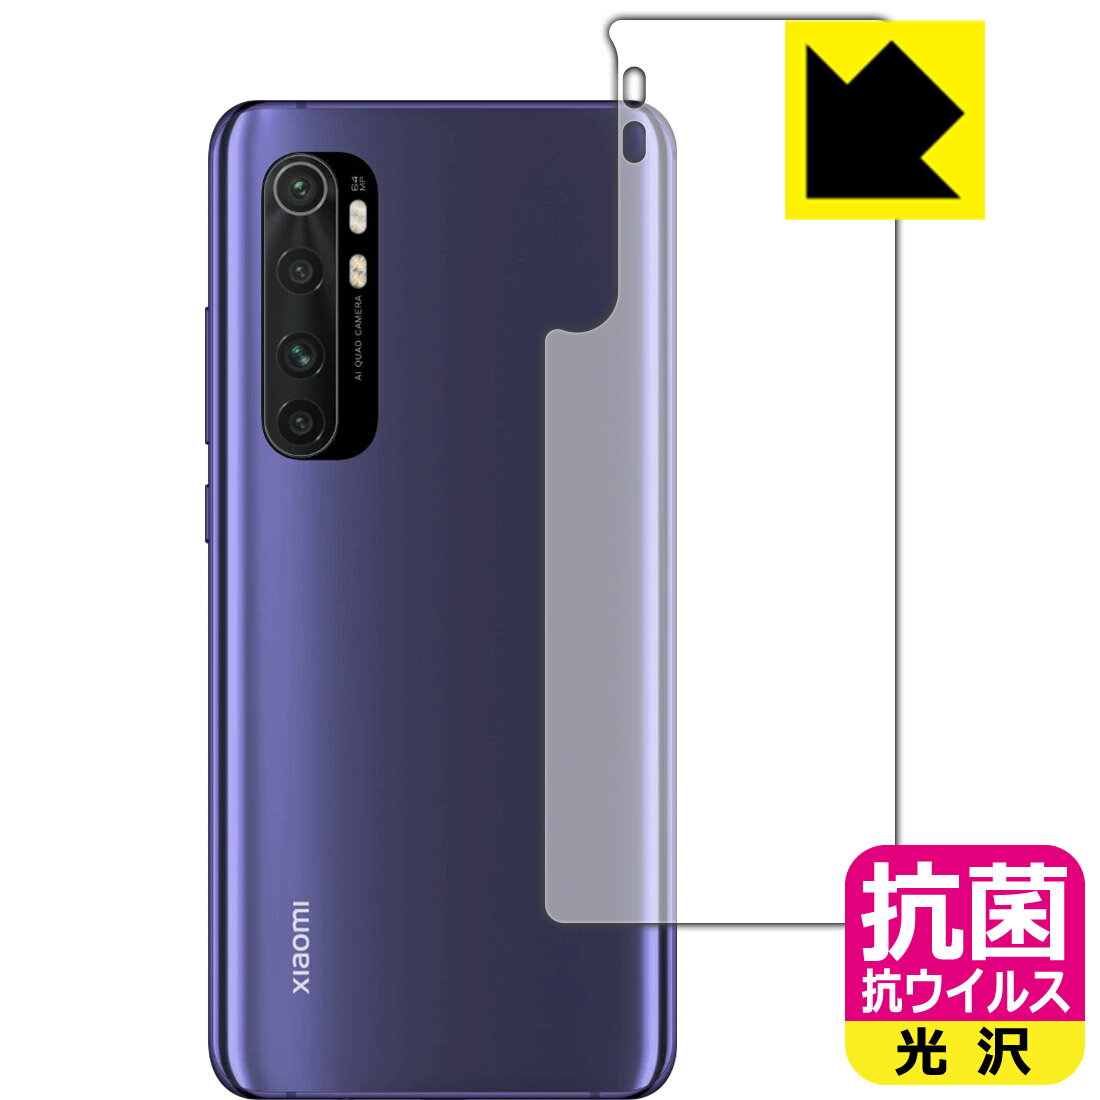 抗菌 抗ウイルス【光沢】保護フィルム Xiaomi Mi Note 10 Lite (背面のみ) 日本製 自社製造直販